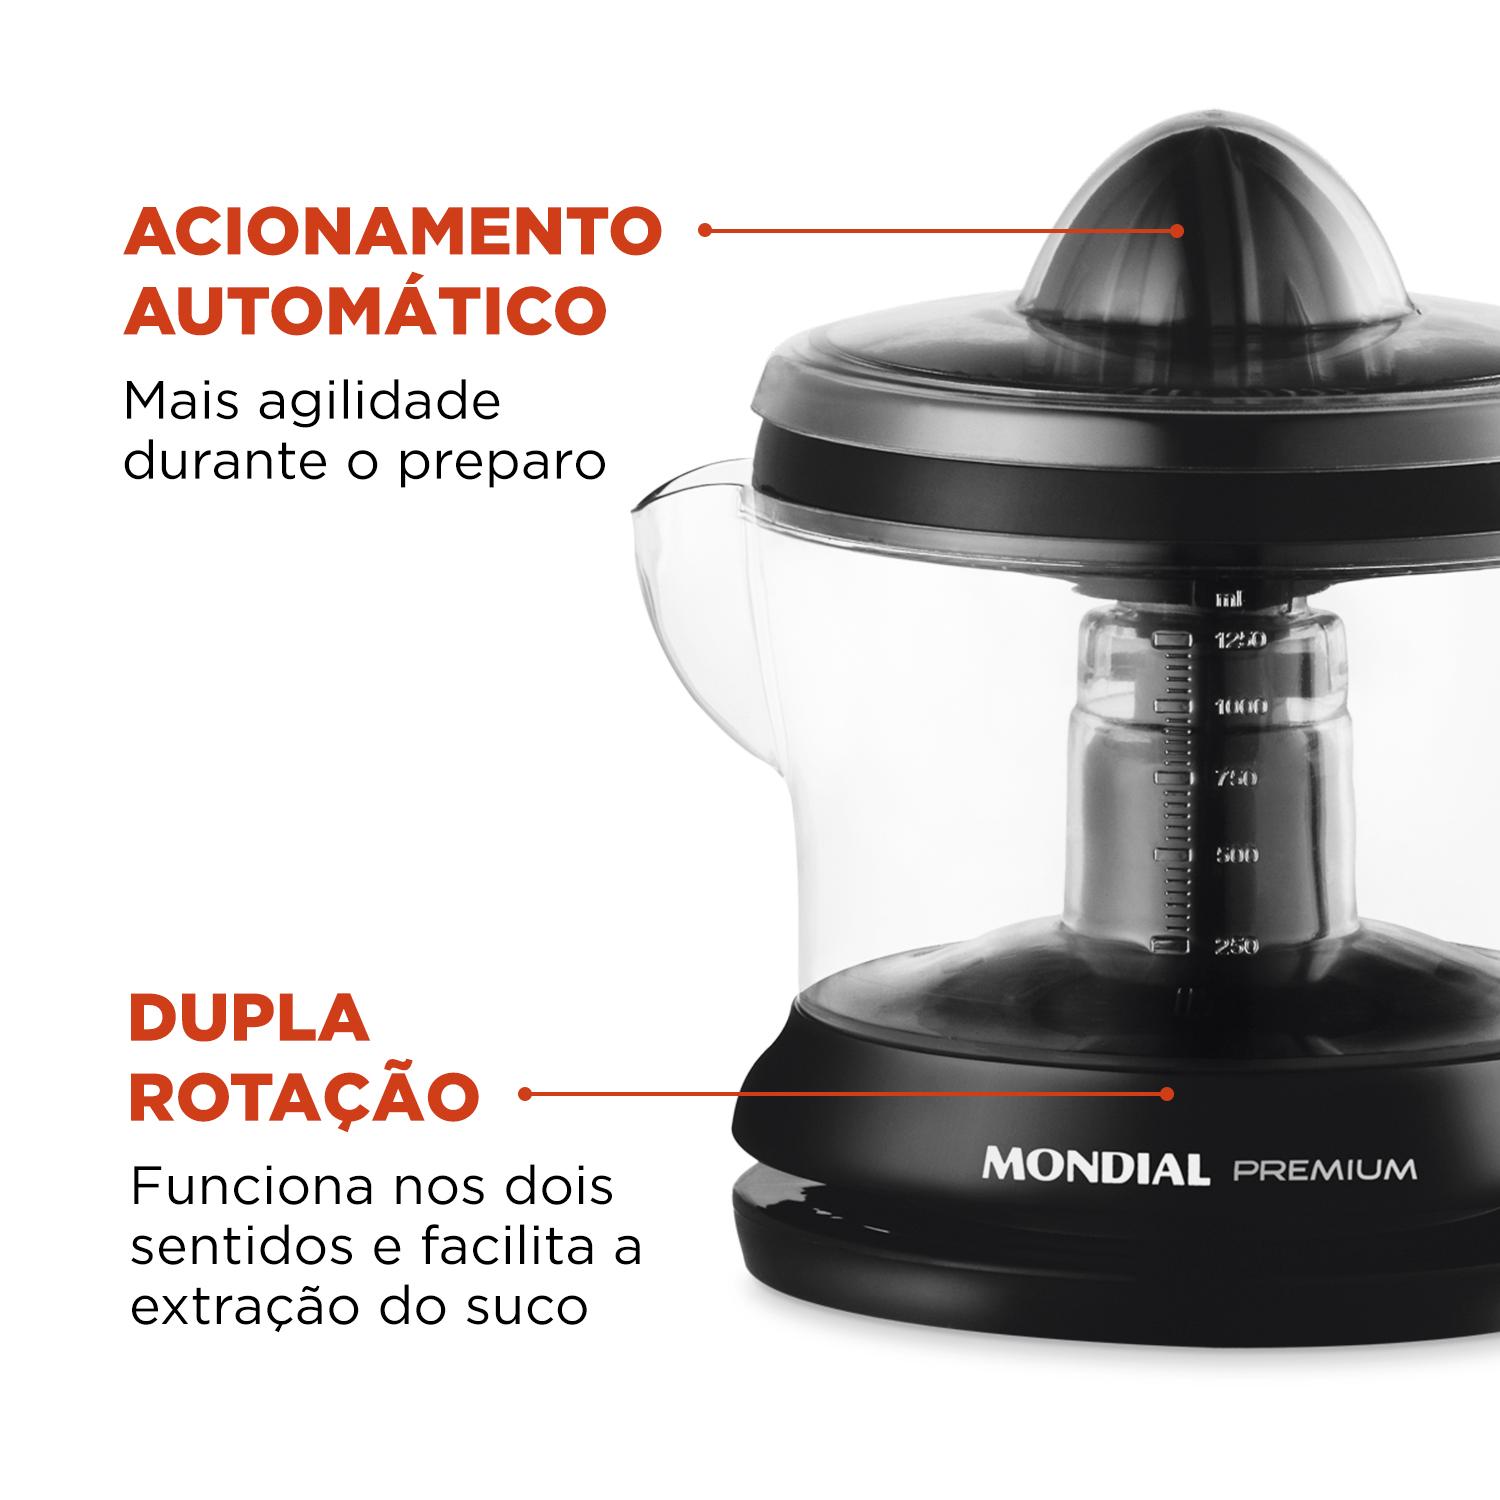 Espremedor 1.25L Mondial Premium E-02 com Dupla Rotação e Acionamento Automático Preto 220V